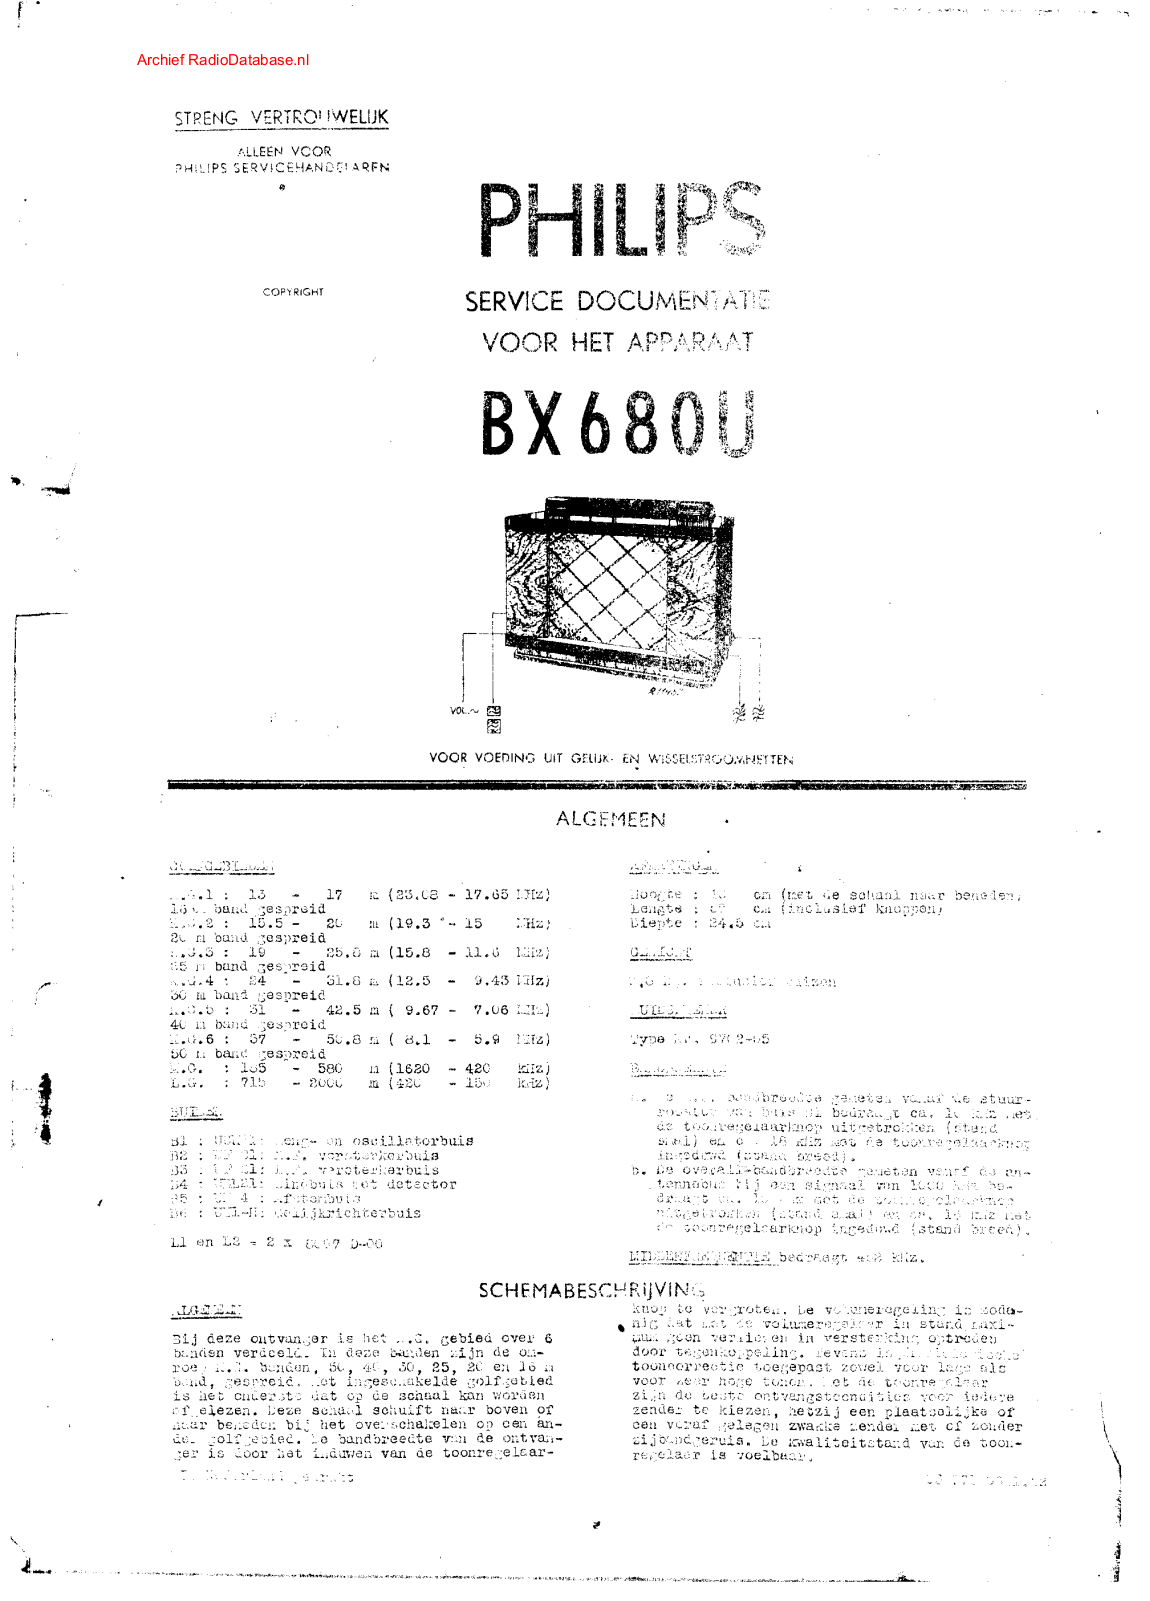 Philips BX680U Schematic